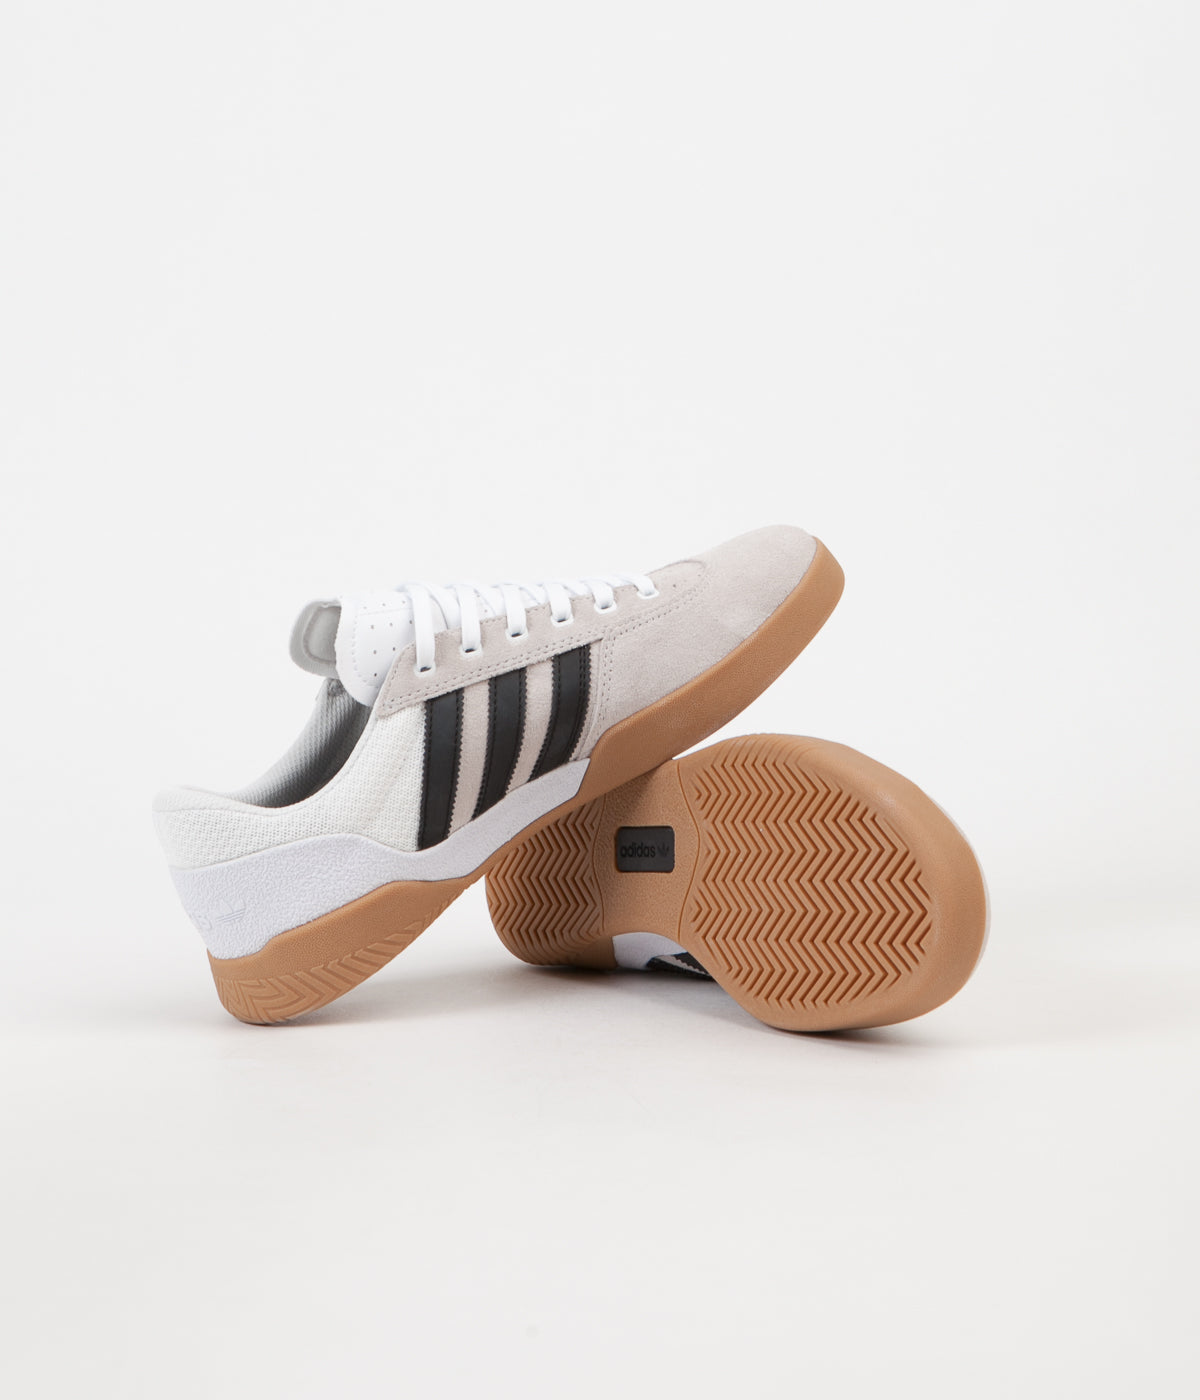 Adidas City Cup Shoes - White / Core Black / Gum4 | Flatspot